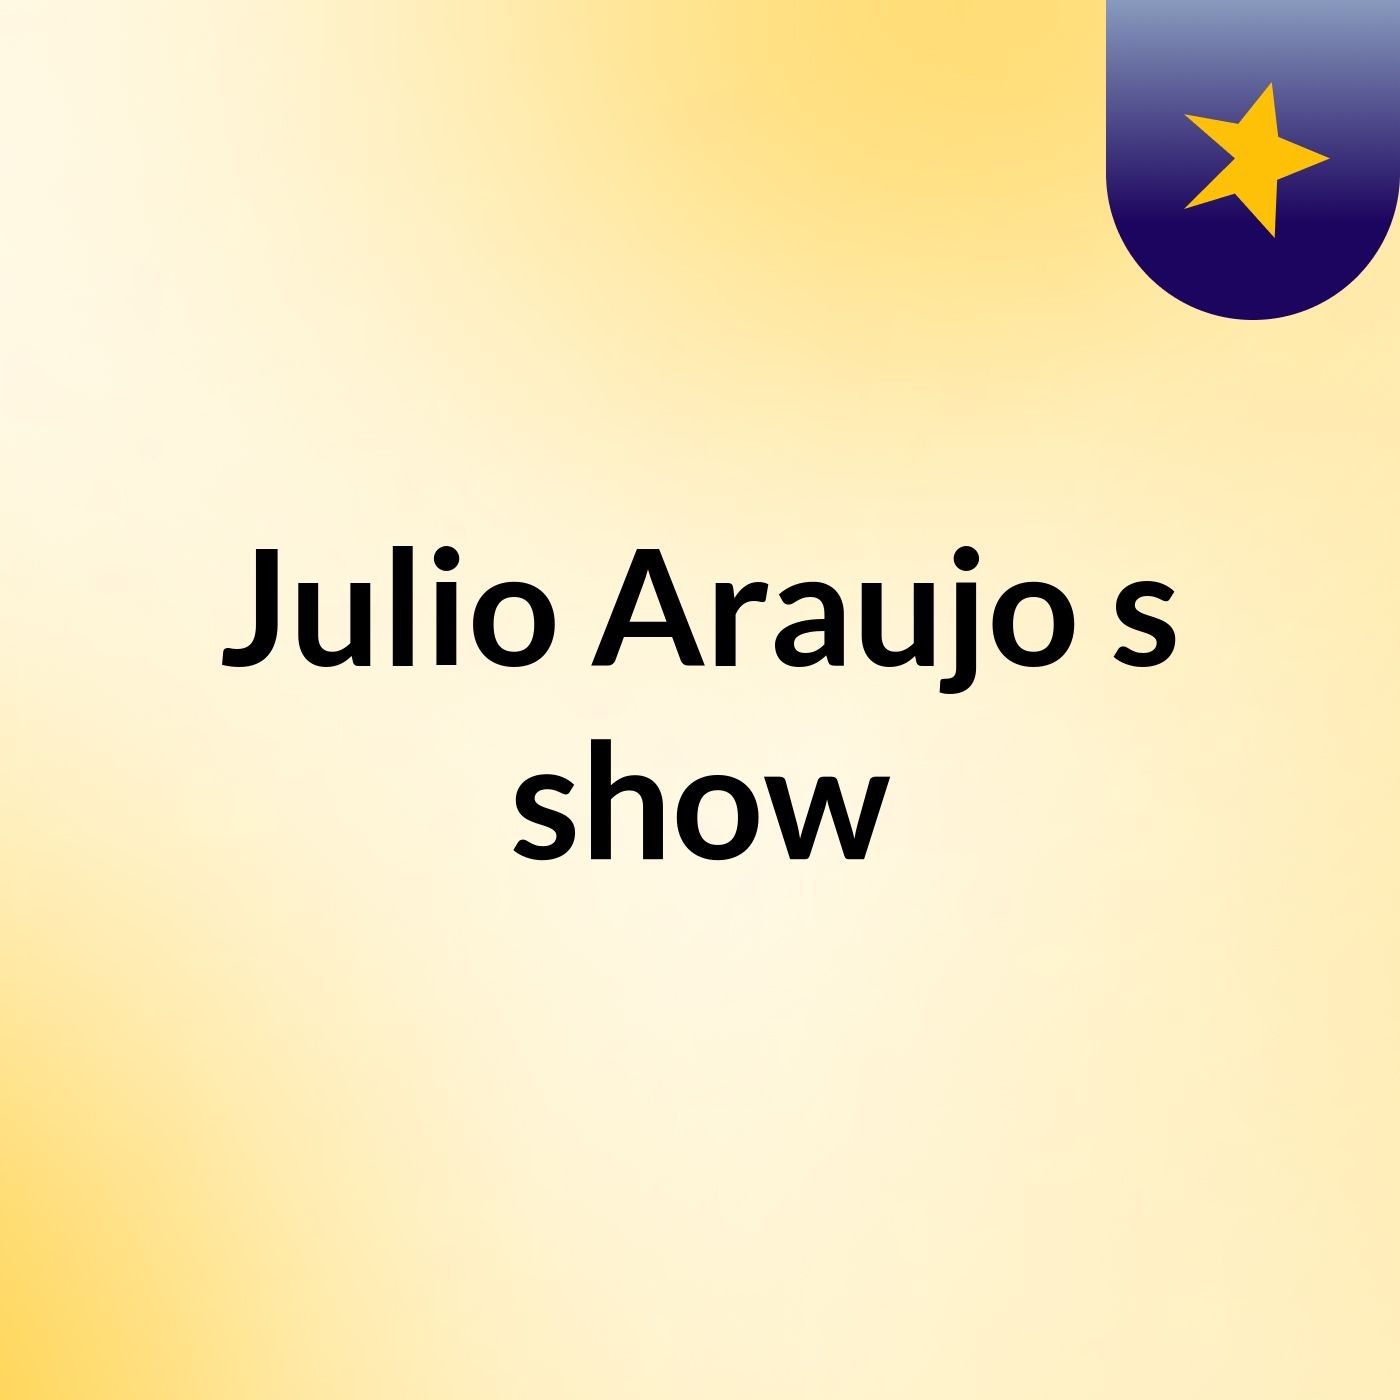 Julio Araujo's show